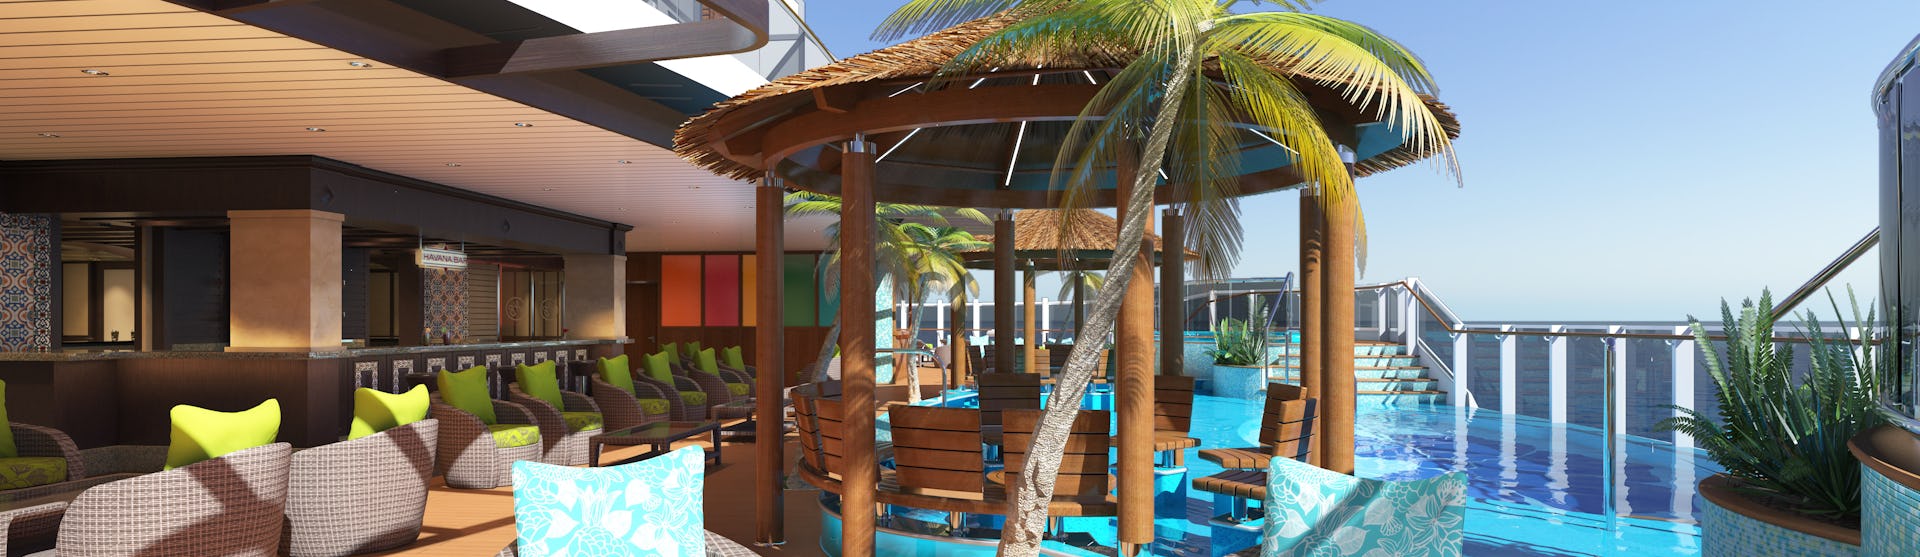 Bild på fartyget Carnival Horizon's pooldäck med palm, solstolar och en pool.